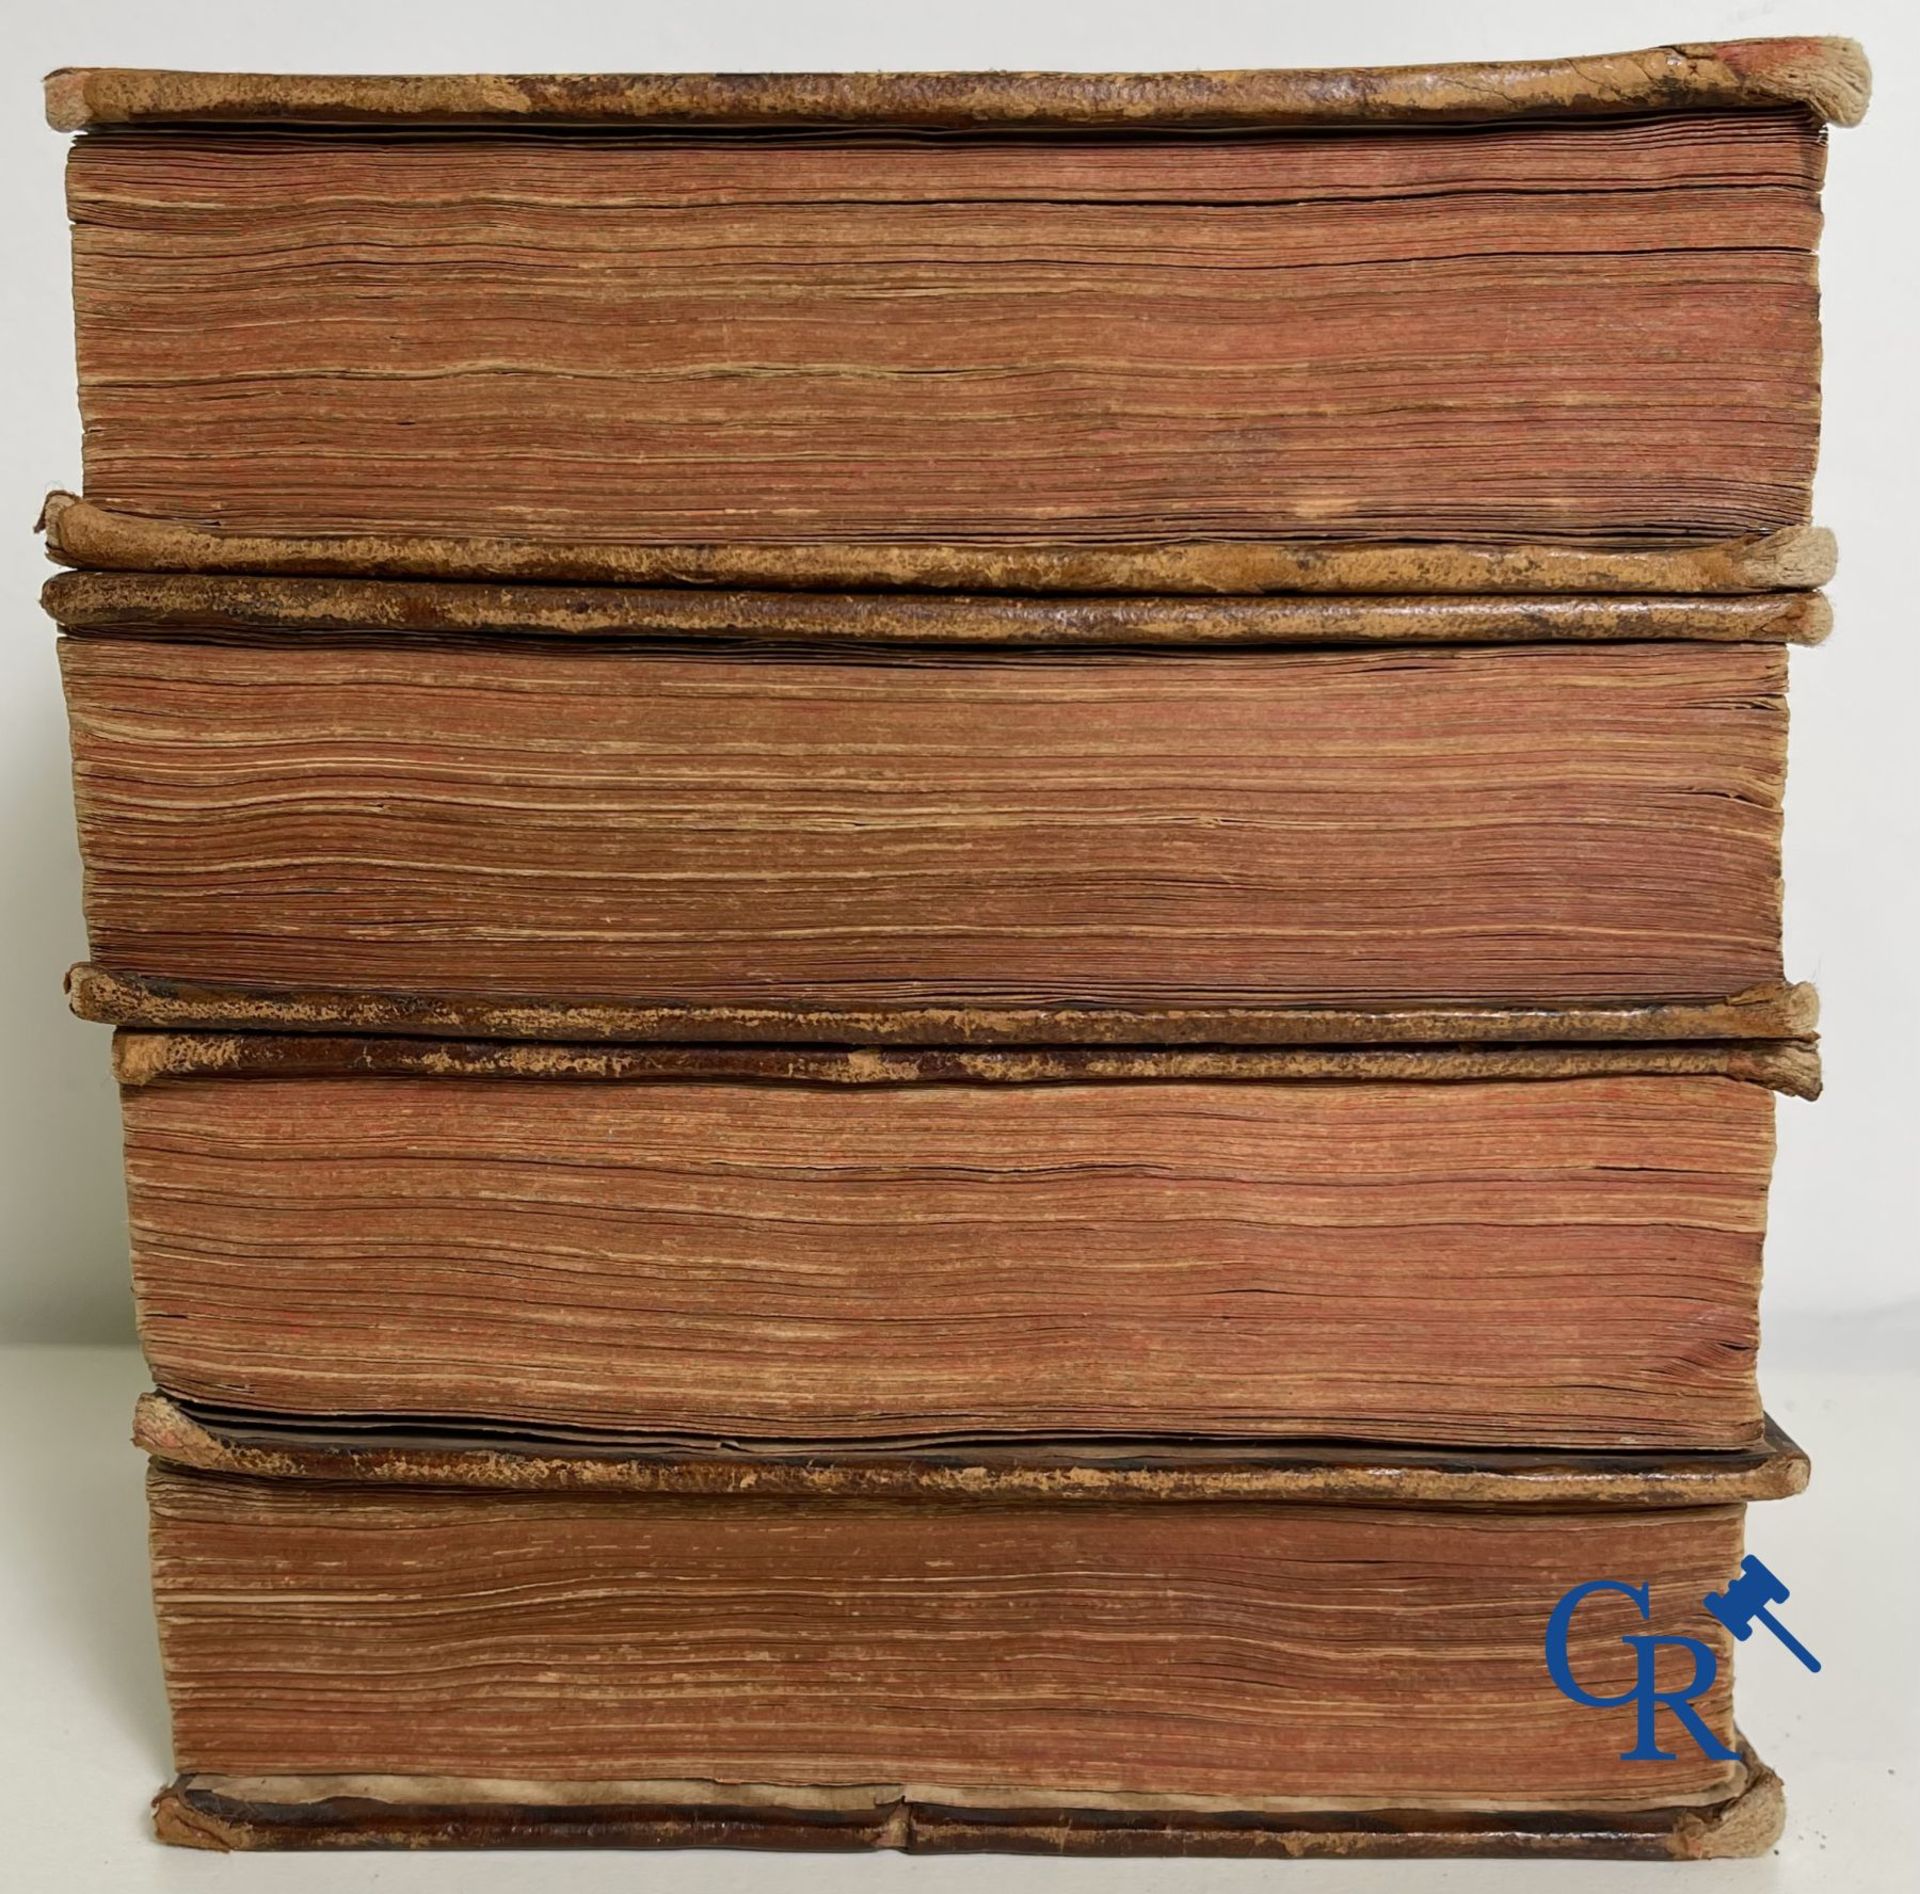 Early printed books: Histoire générale des Pais-Bas, 1720 Chez François Foppens à Brusselle. - Image 23 of 23